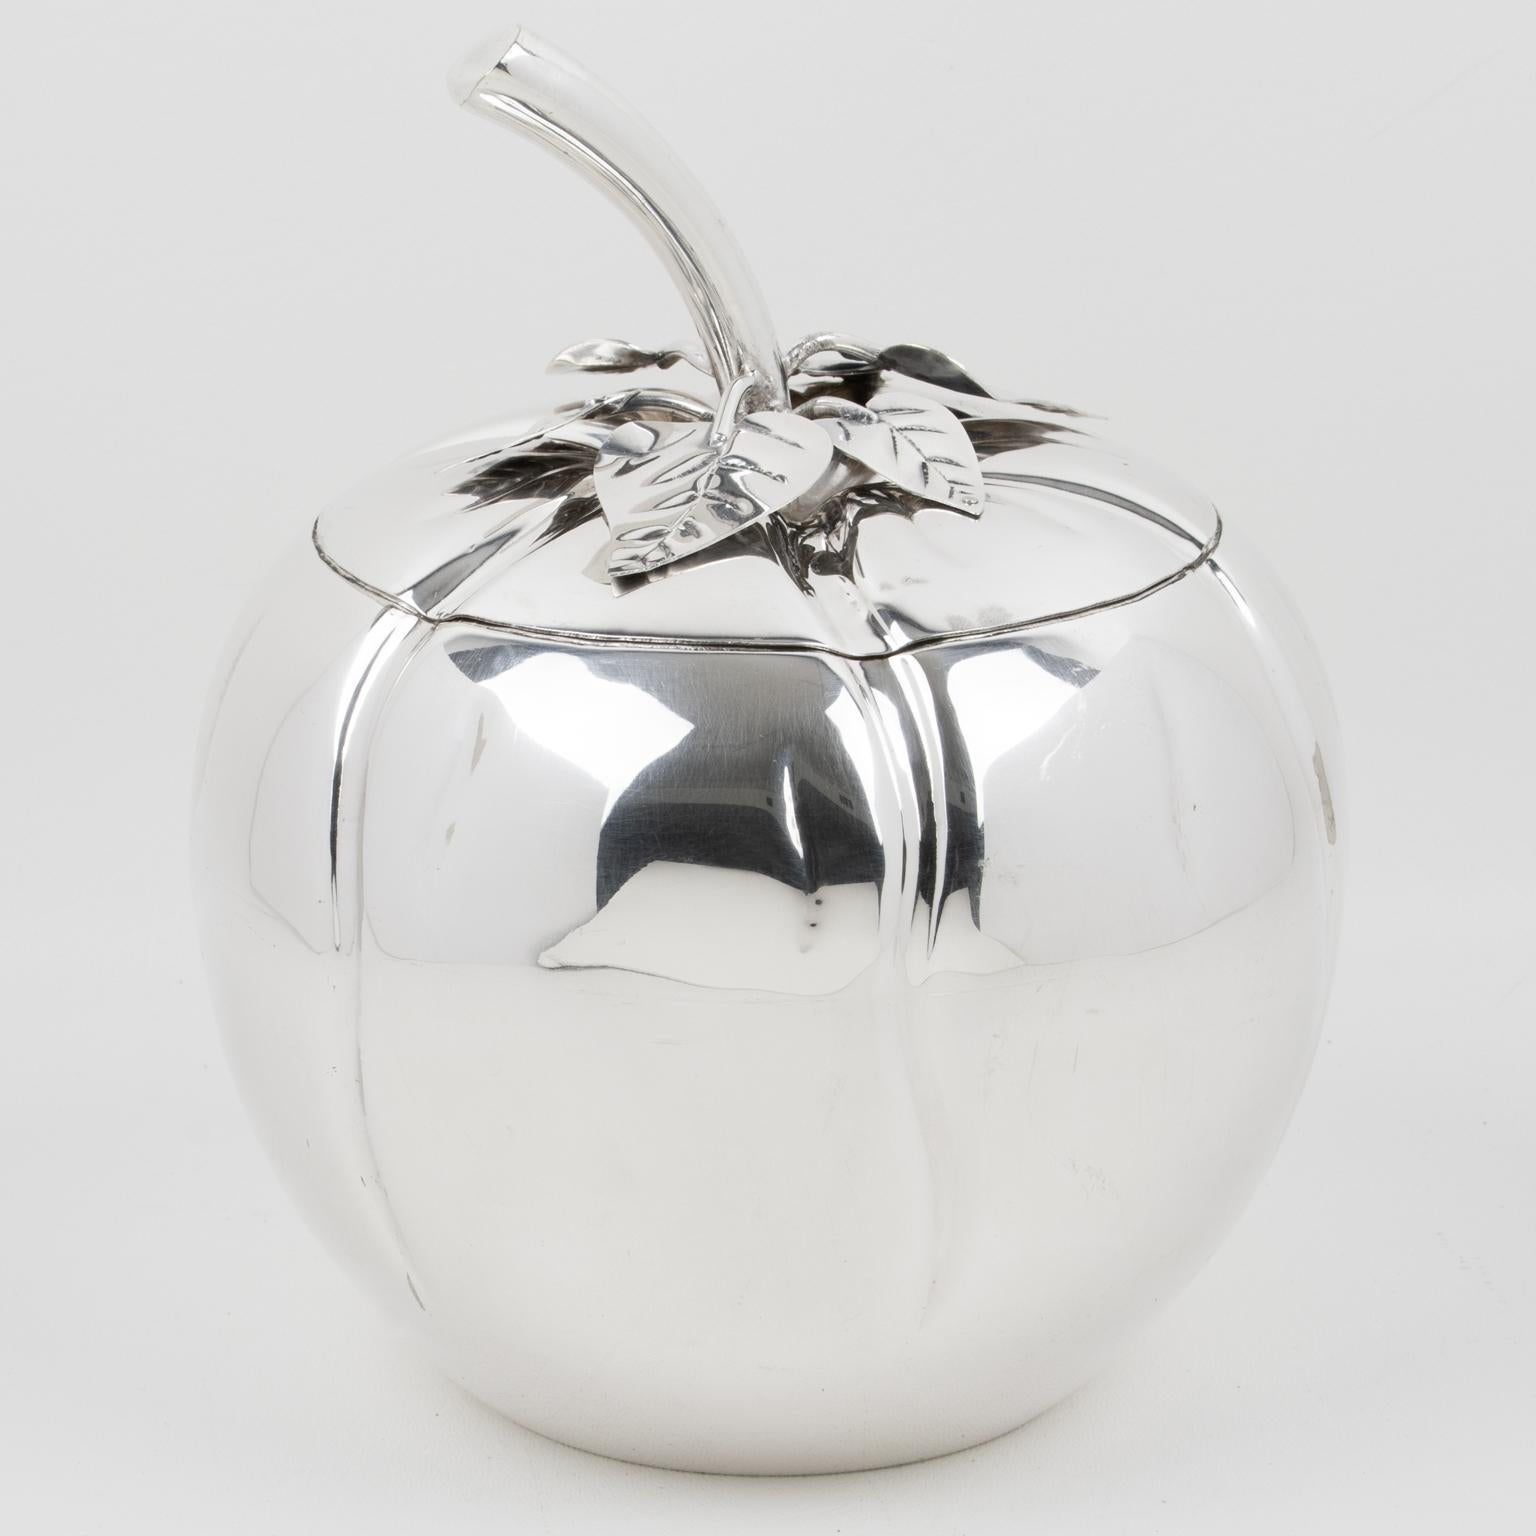 Teghini Firenze entwarf diesen schönen modernistischen Eiskübel aus Silberblech in den 1980er Jahren. Das Stück hat eine runde Form mit einem überdimensionalen, stilisierten Tomatendesign, einem Deckel und einem Siebeinsatz. Es gibt keine sichtbare